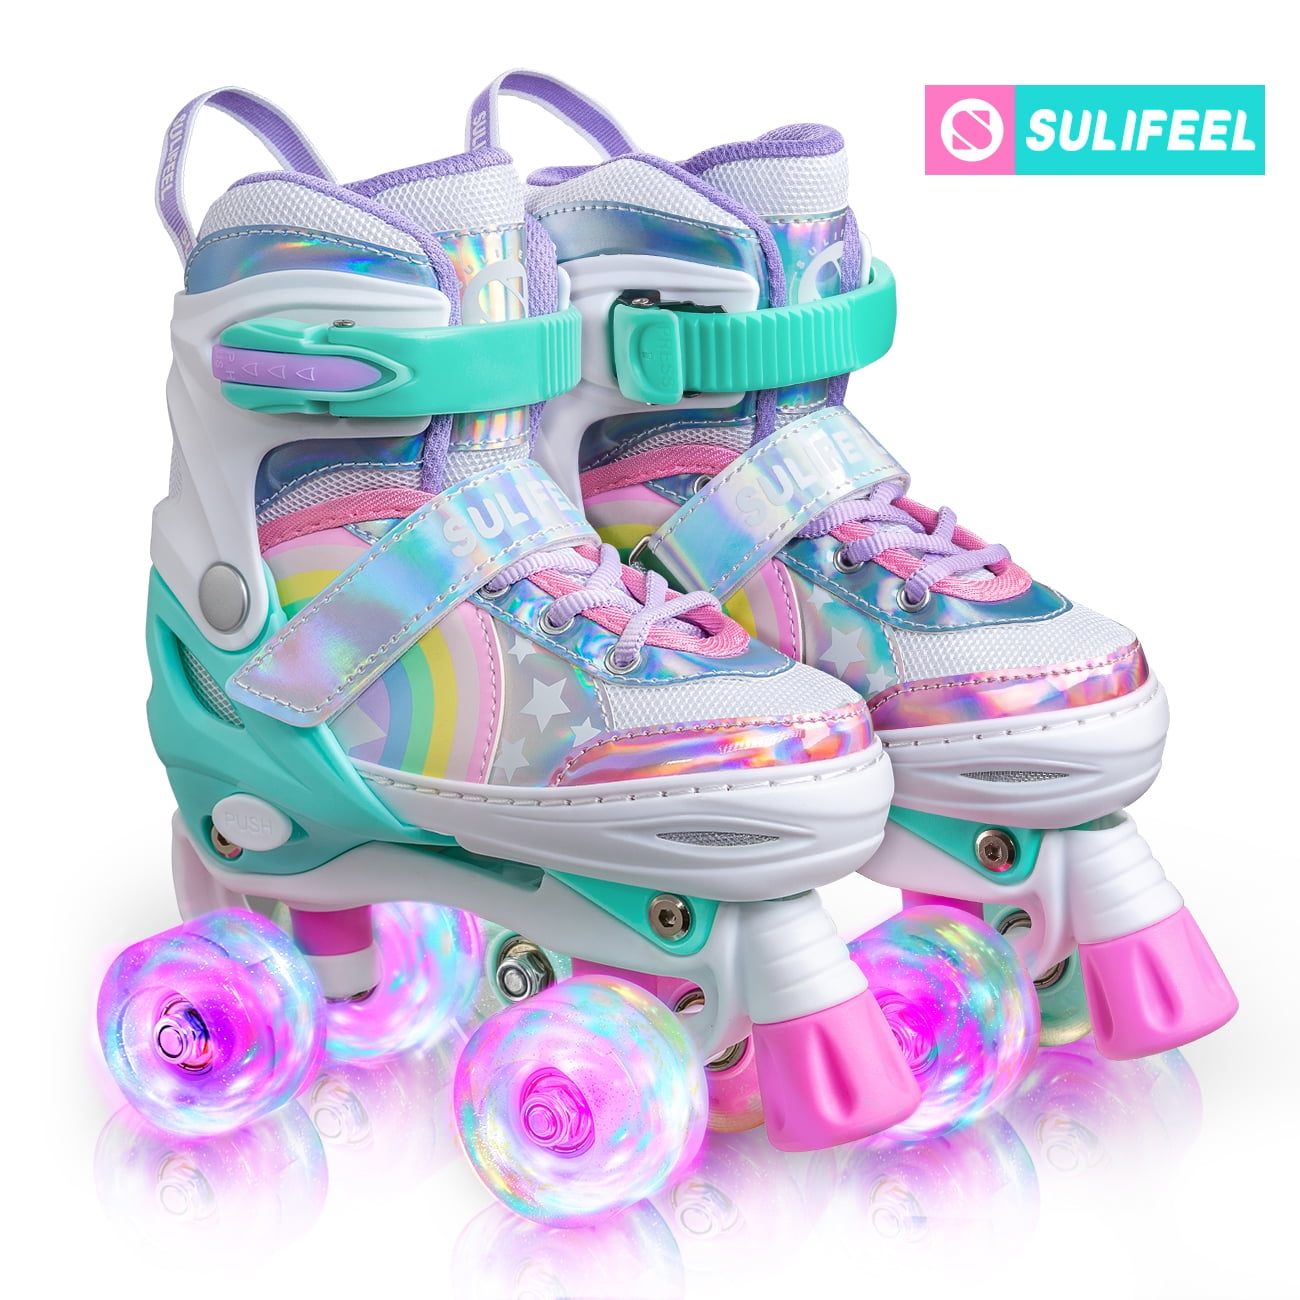 4 Size Adjustable Toddler Roller Skates~7 Roller Skates for Girls Boys and Kids 